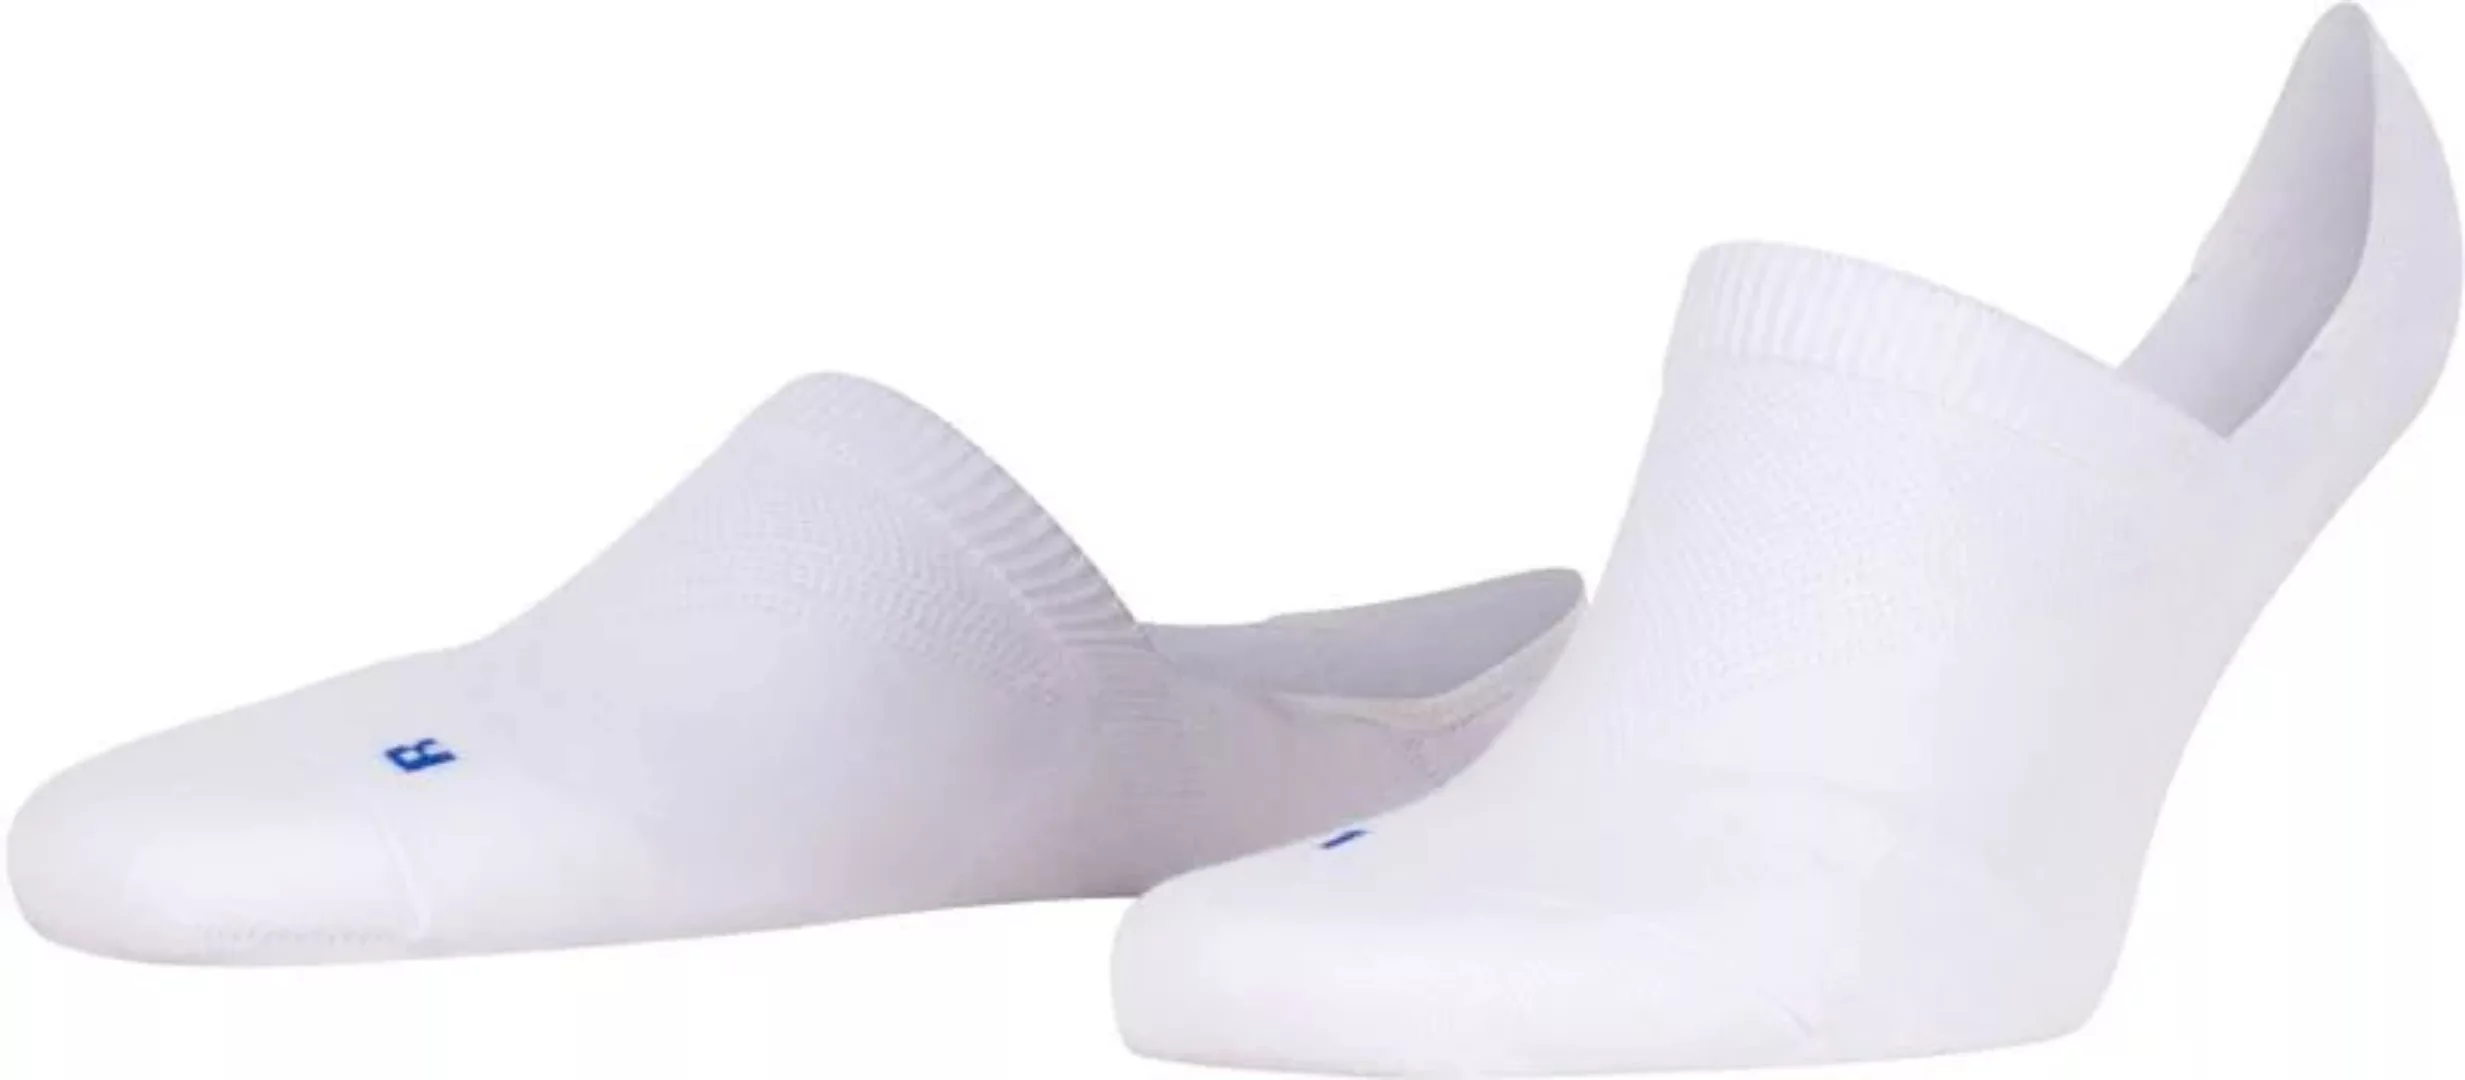 FALKE Cool Kick Antslip Socken Weiß - Größe 39-41 günstig online kaufen